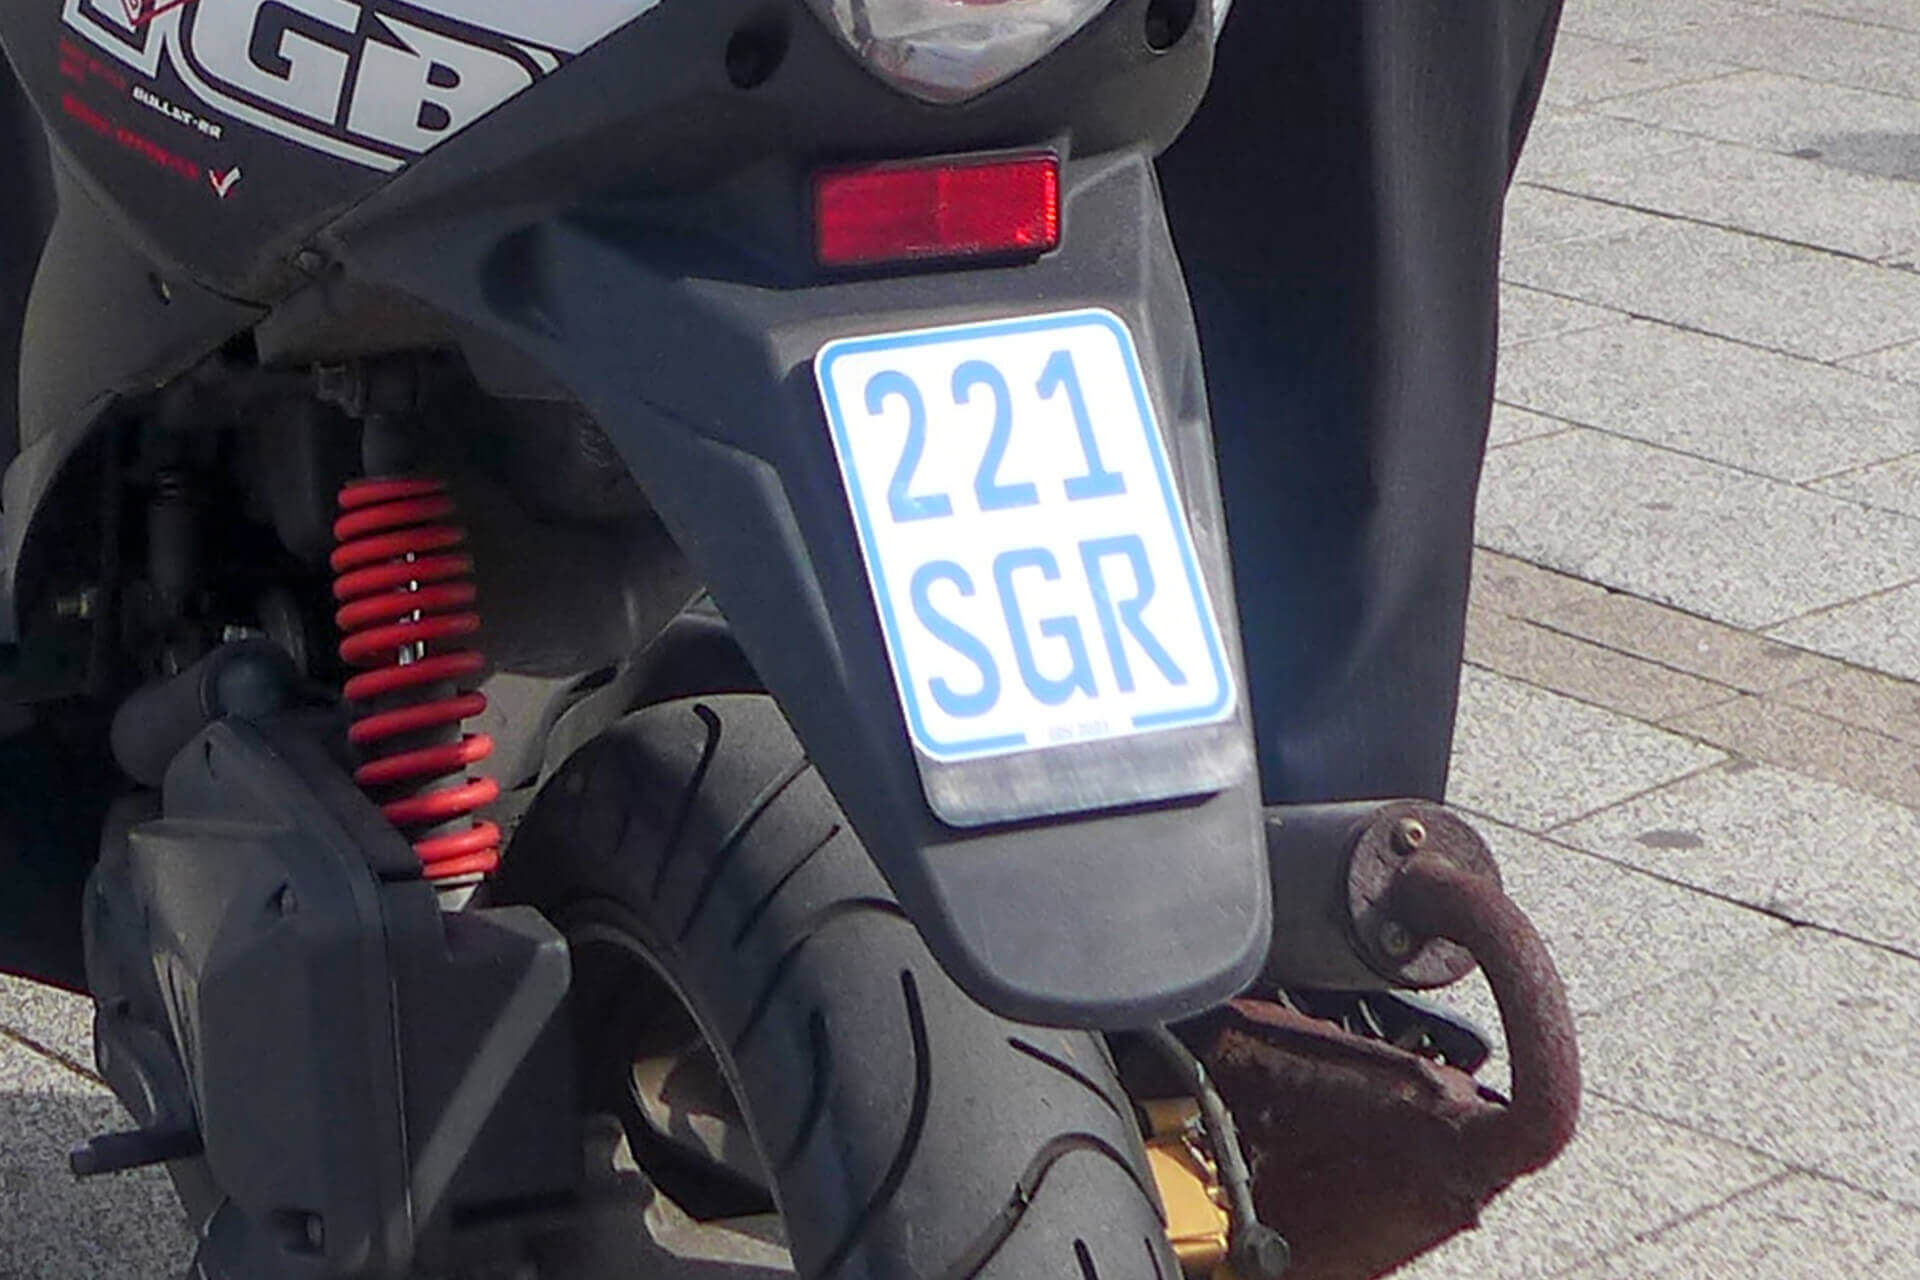 Moped Aufkleber - 52 Suchergebnisse